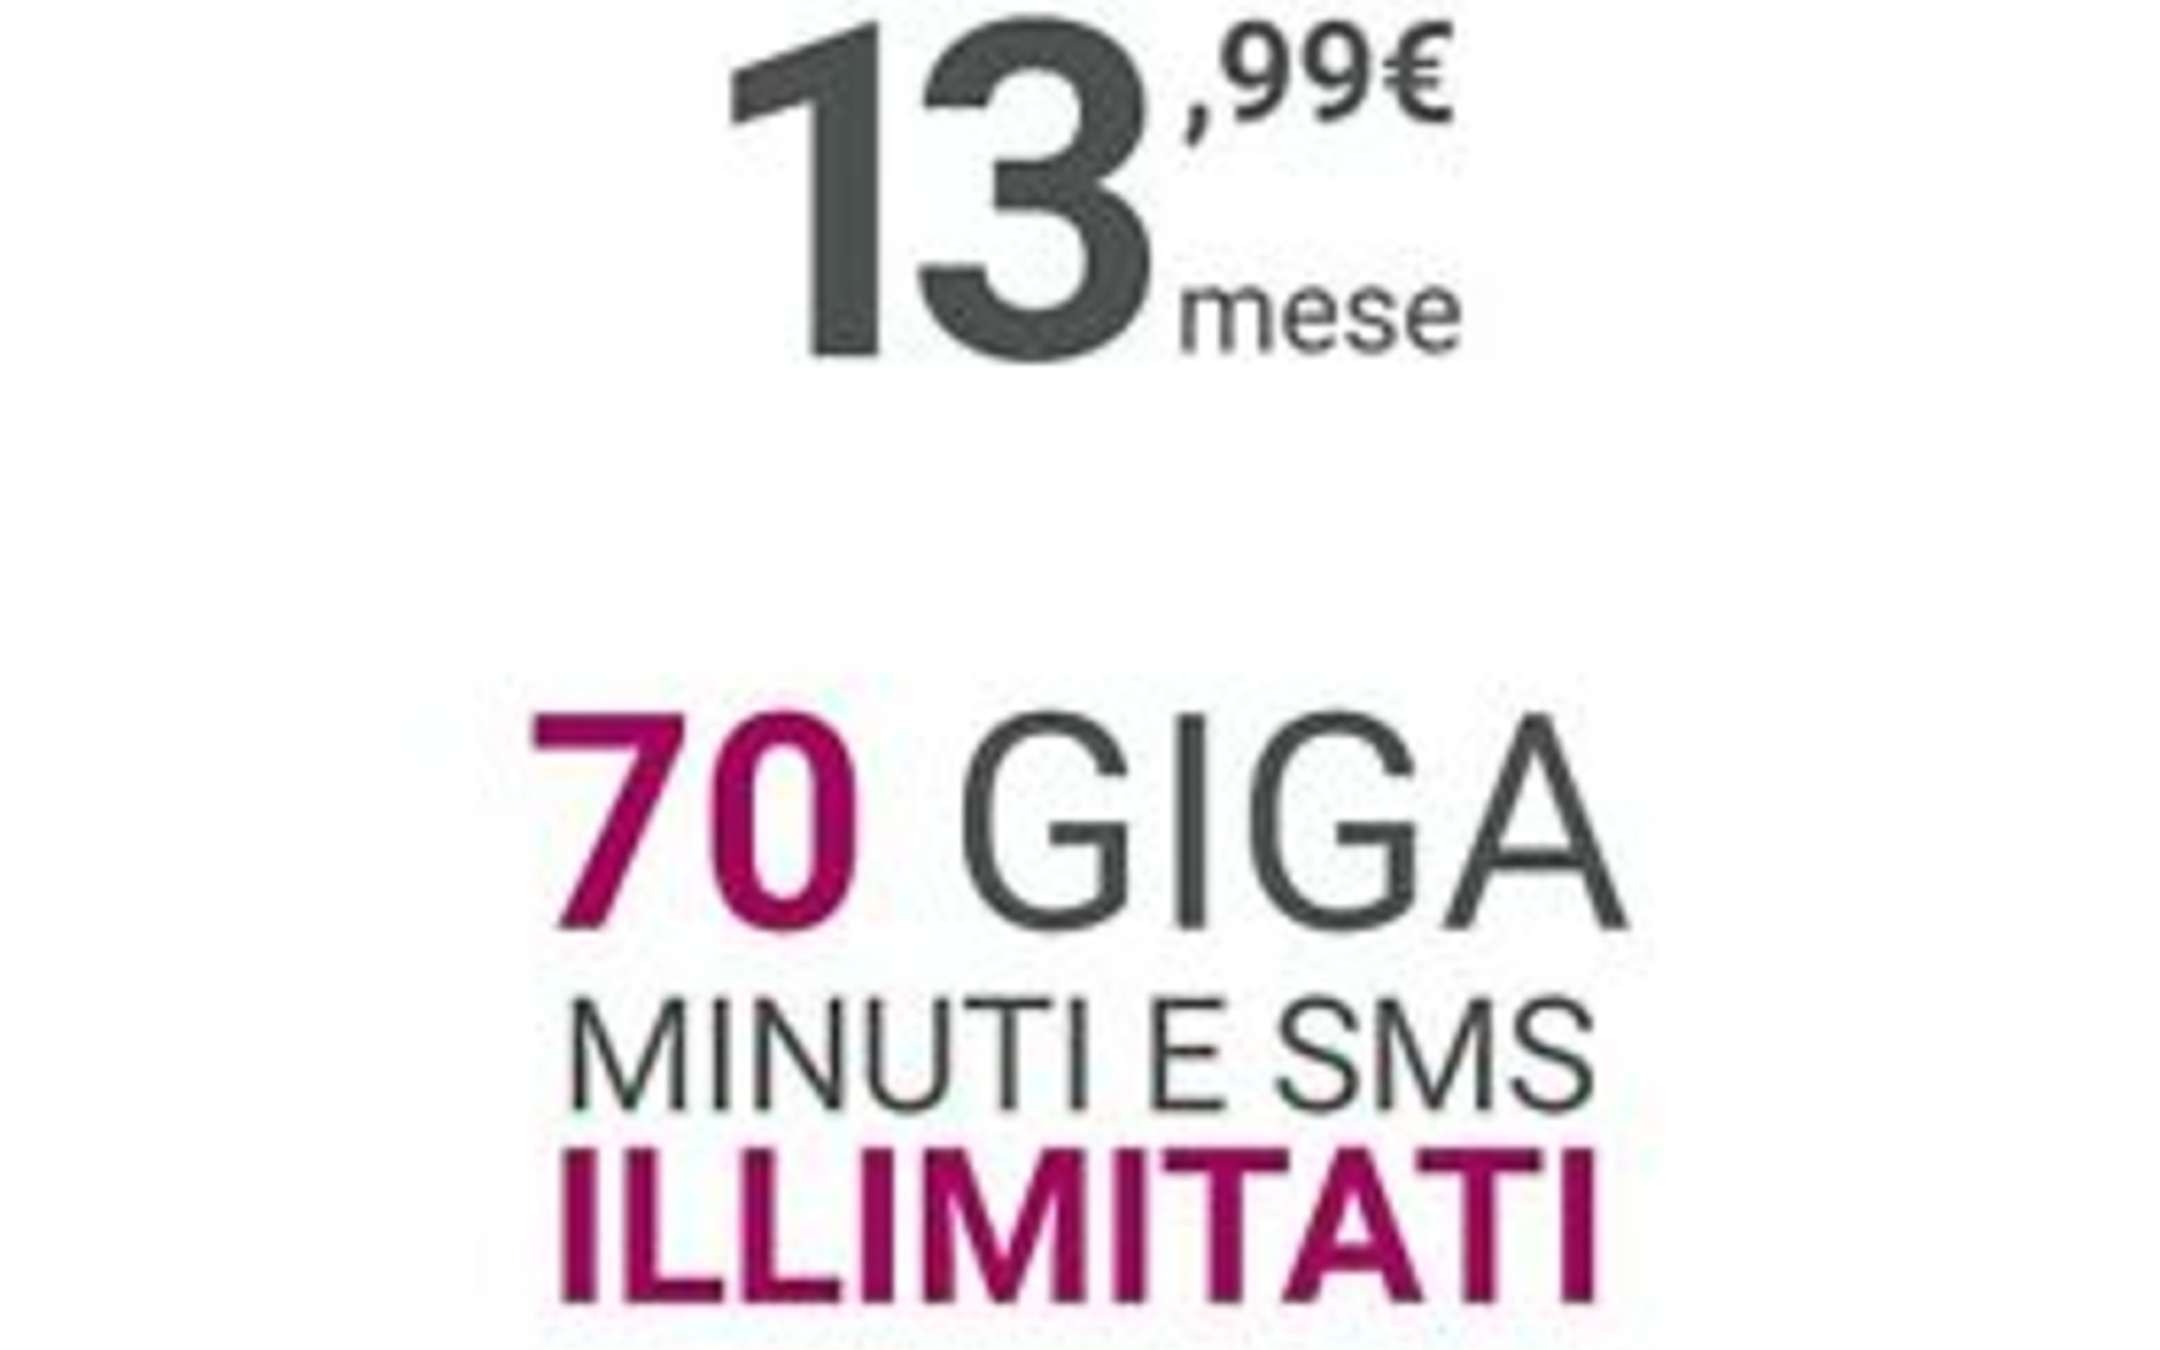 Kena Mobile: Promo a 13,99€ disponibile per tutti